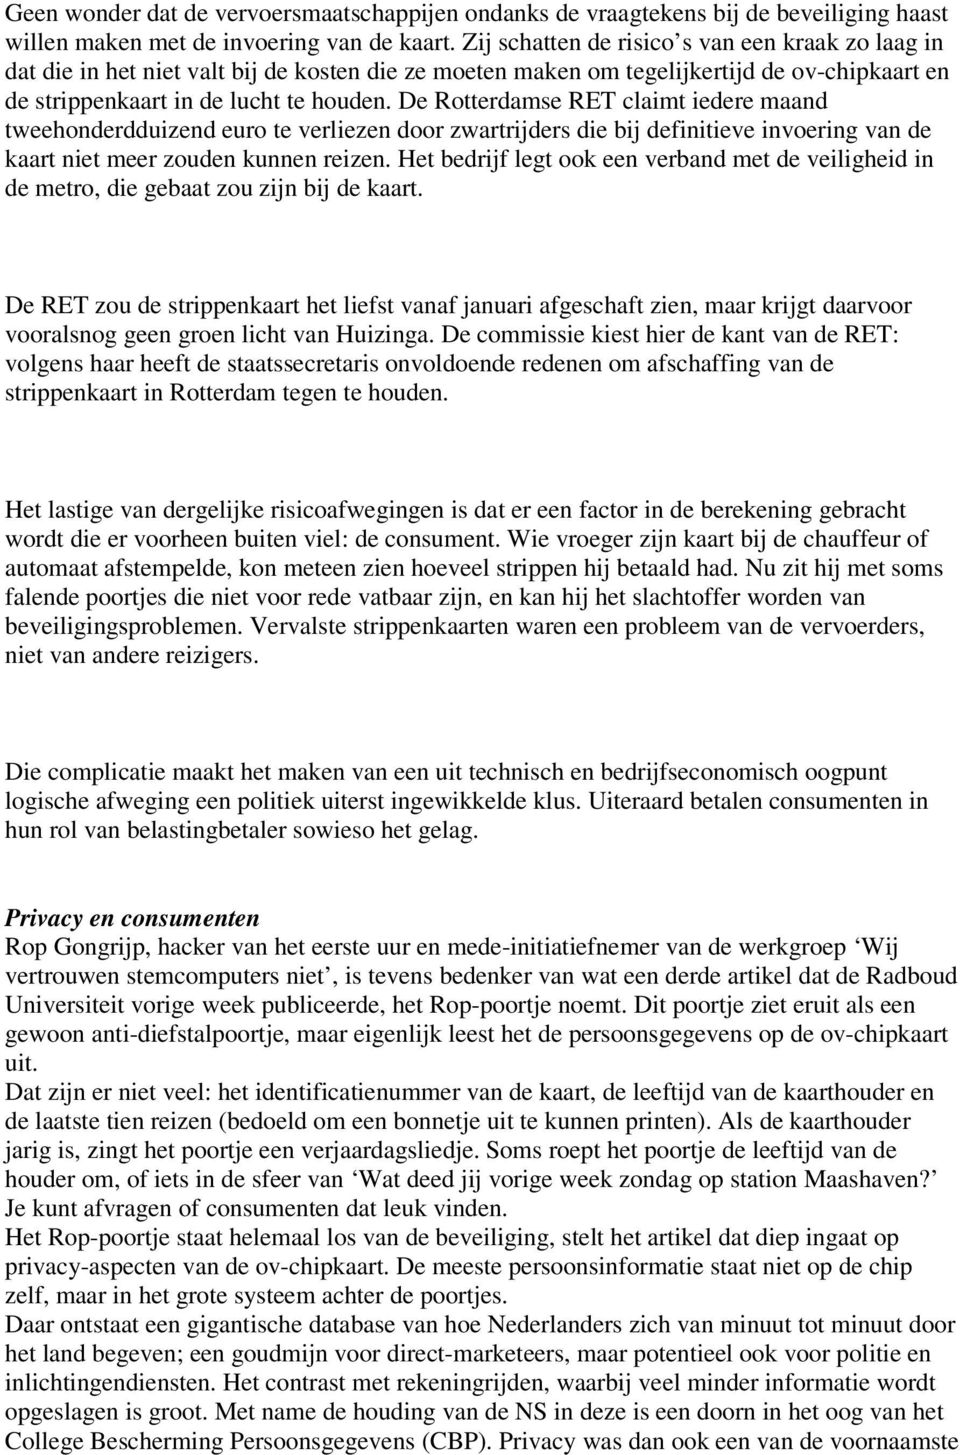 De Rotterdamse RET claimt iedere maand tweehonderdduizend euro te verliezen door zwartrijders die bij definitieve invoering van de kaart niet meer zouden kunnen reizen.